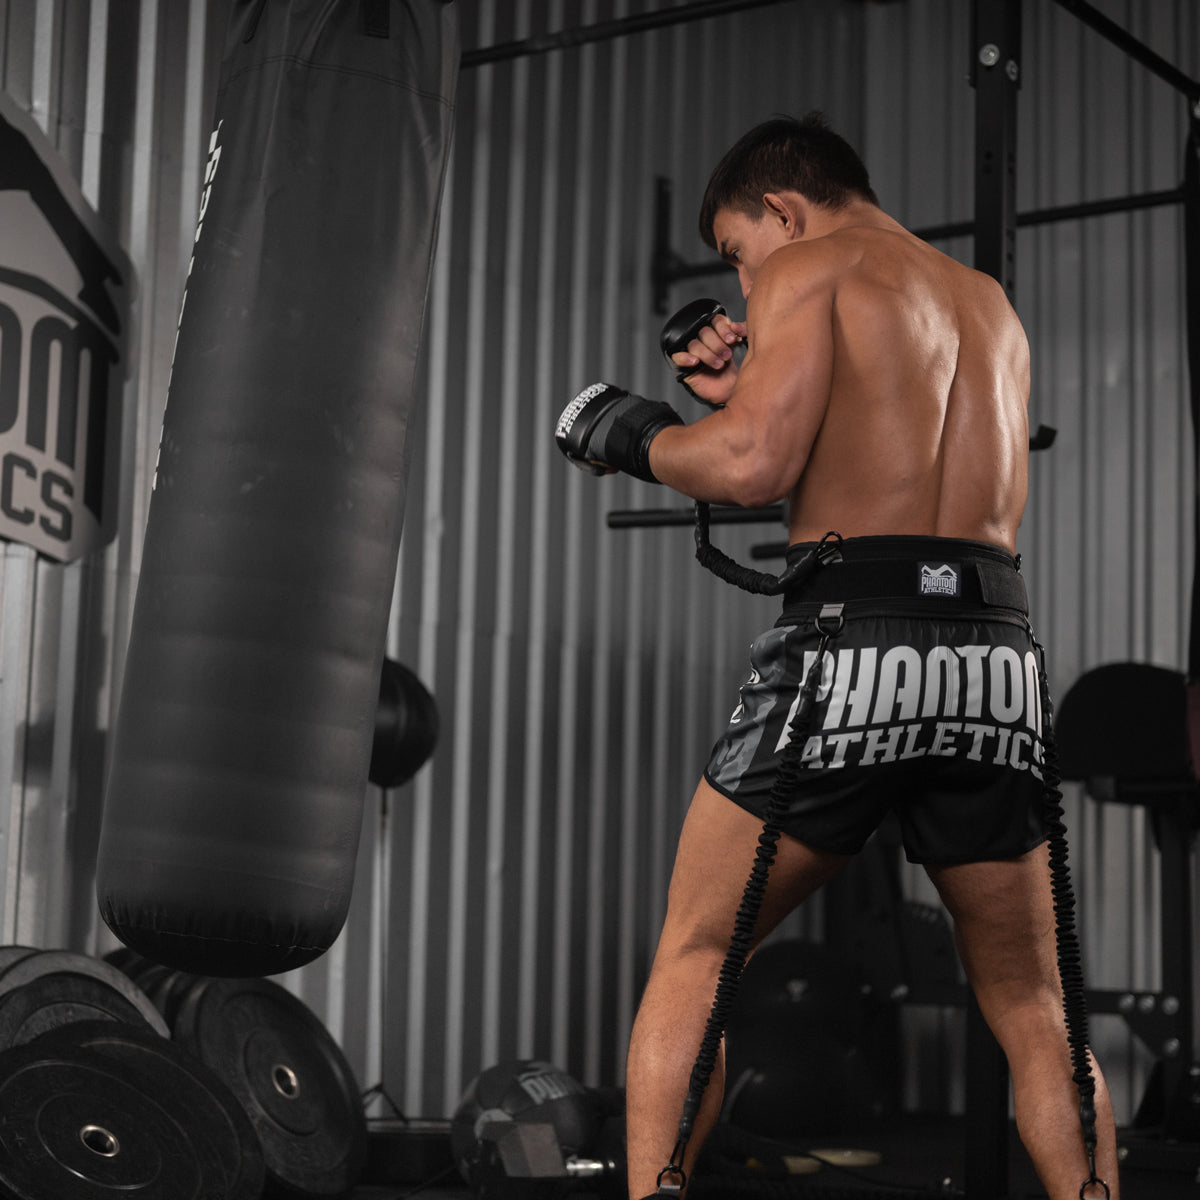 KSW MMA Champion Daniel Torres mit dem Phantom Strike Trainer beim Sandsack Training.